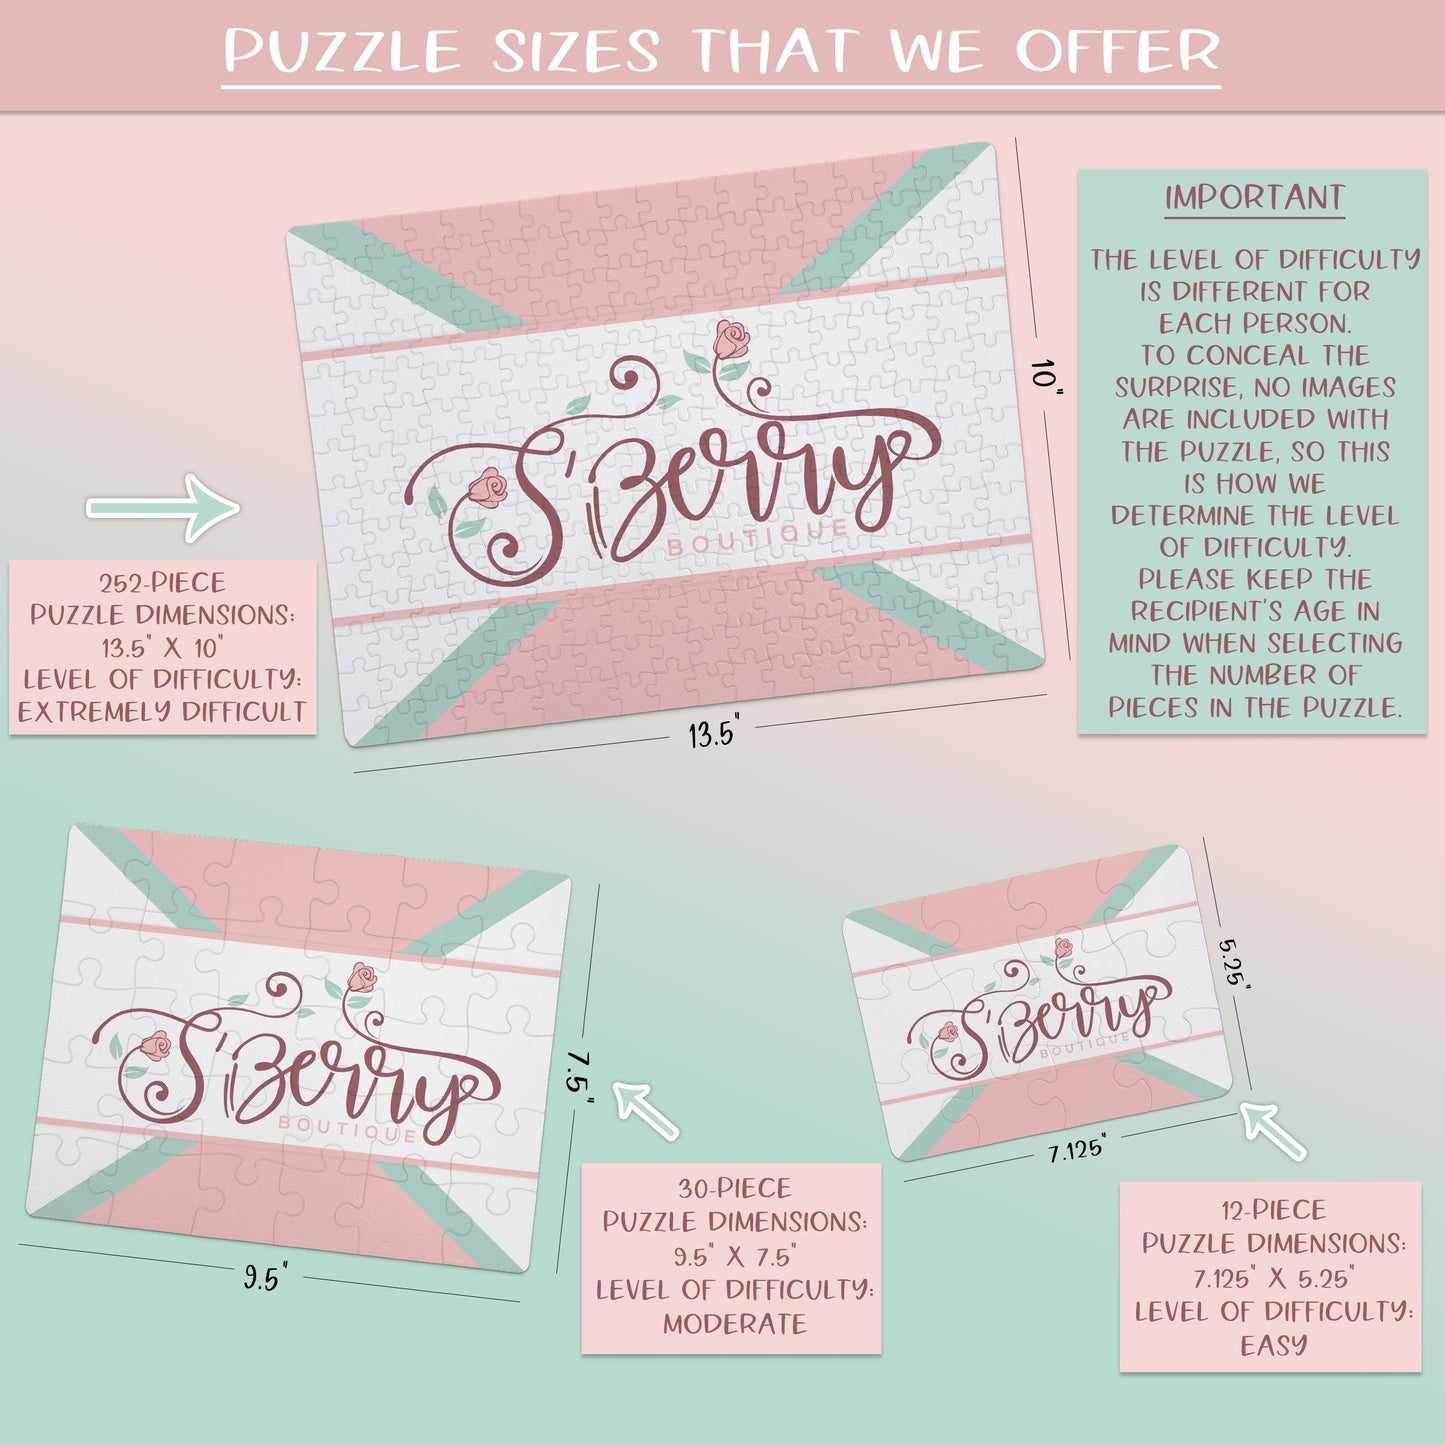 Puzzle Size Options | 12 pieces, 30 pieces, 252 pieces | S’Berry Boutique, LLC